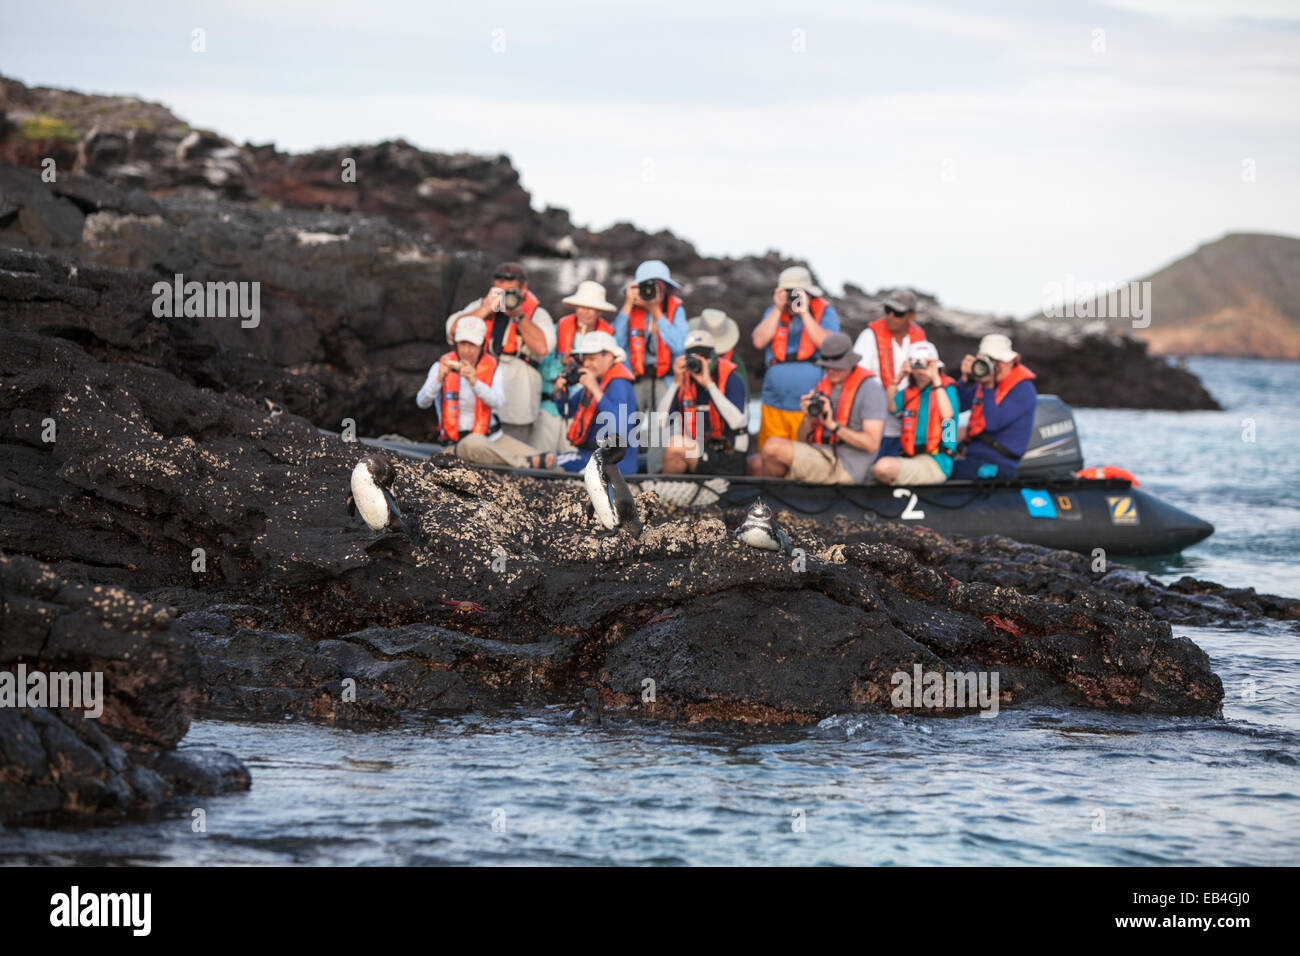 Los turistas observar y fotografiar los pingüinos descansando sobre una roca. Foto de stock